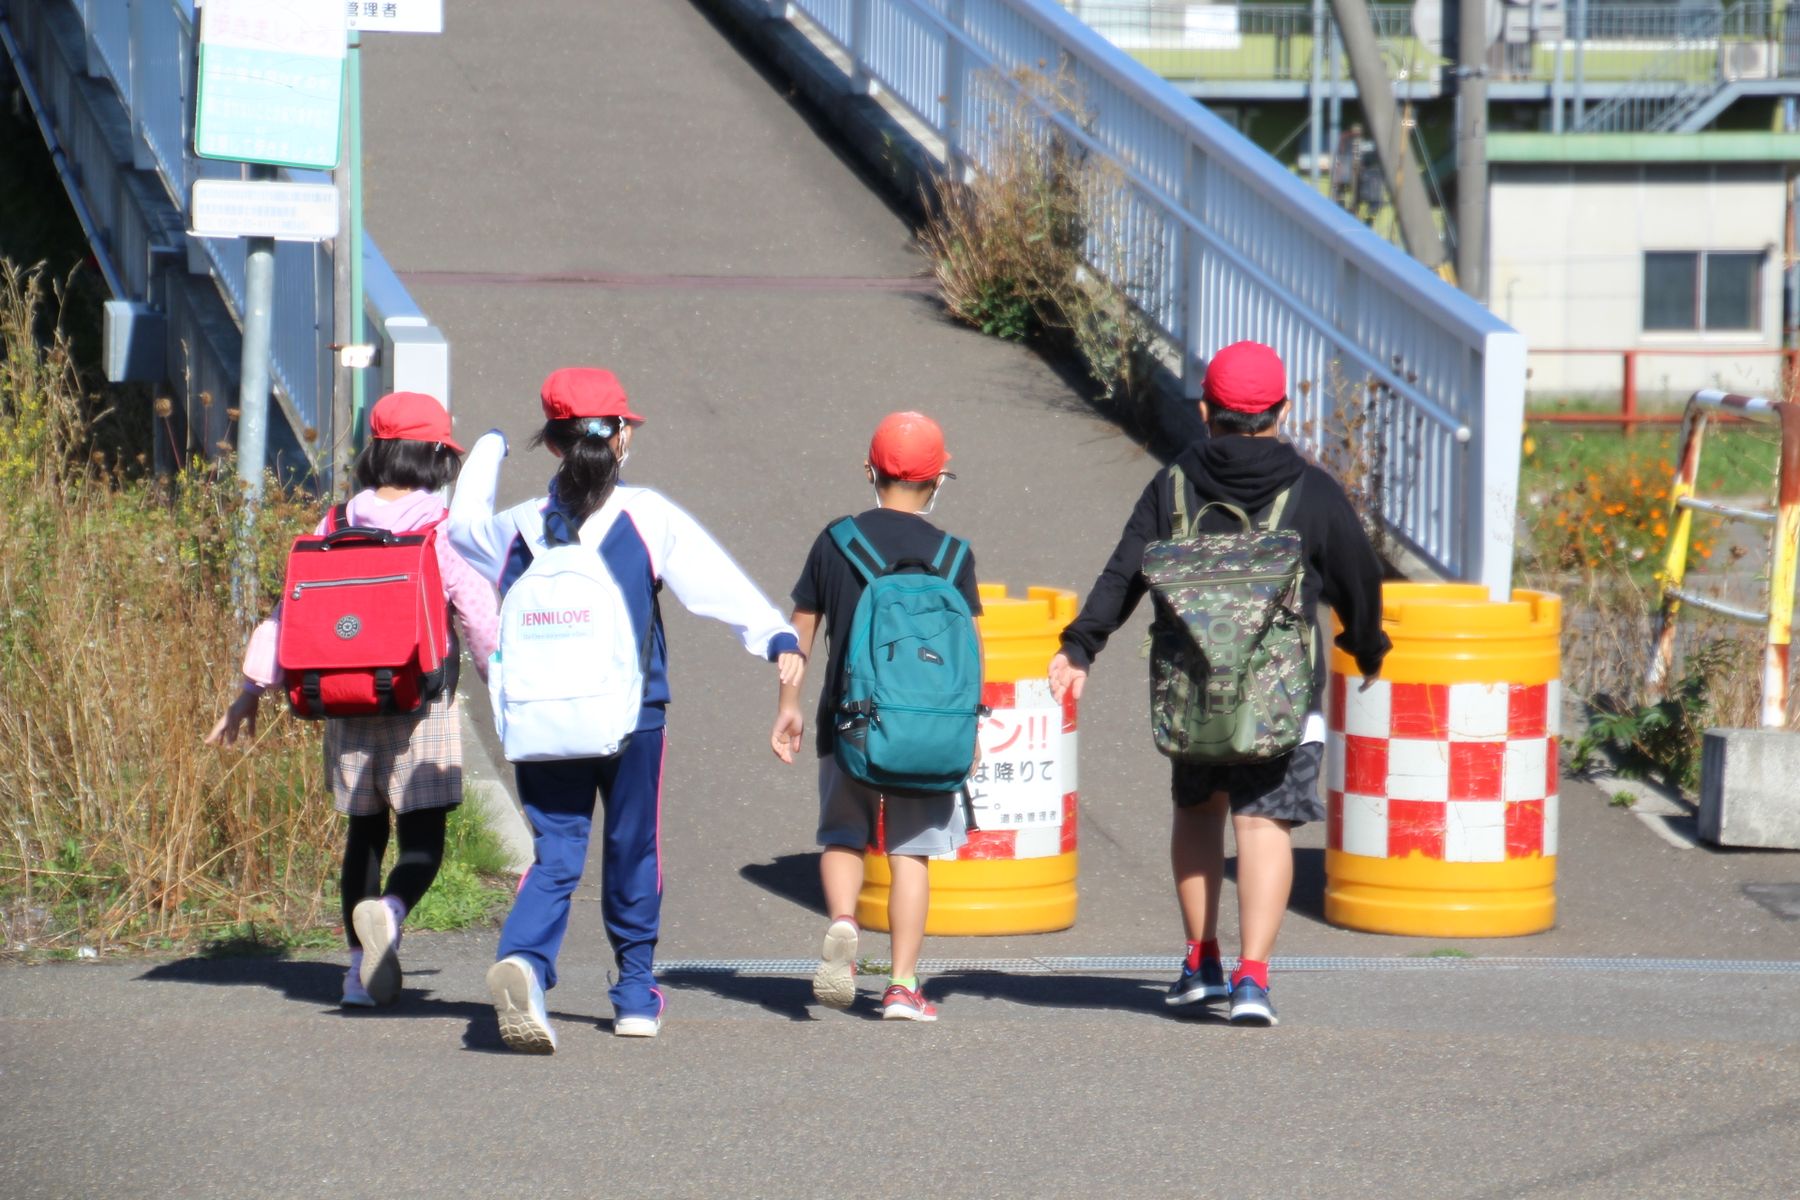 これから橋を渡ろうとする、赤い帽子をかぶりリュックを背負った4人の子供の写真